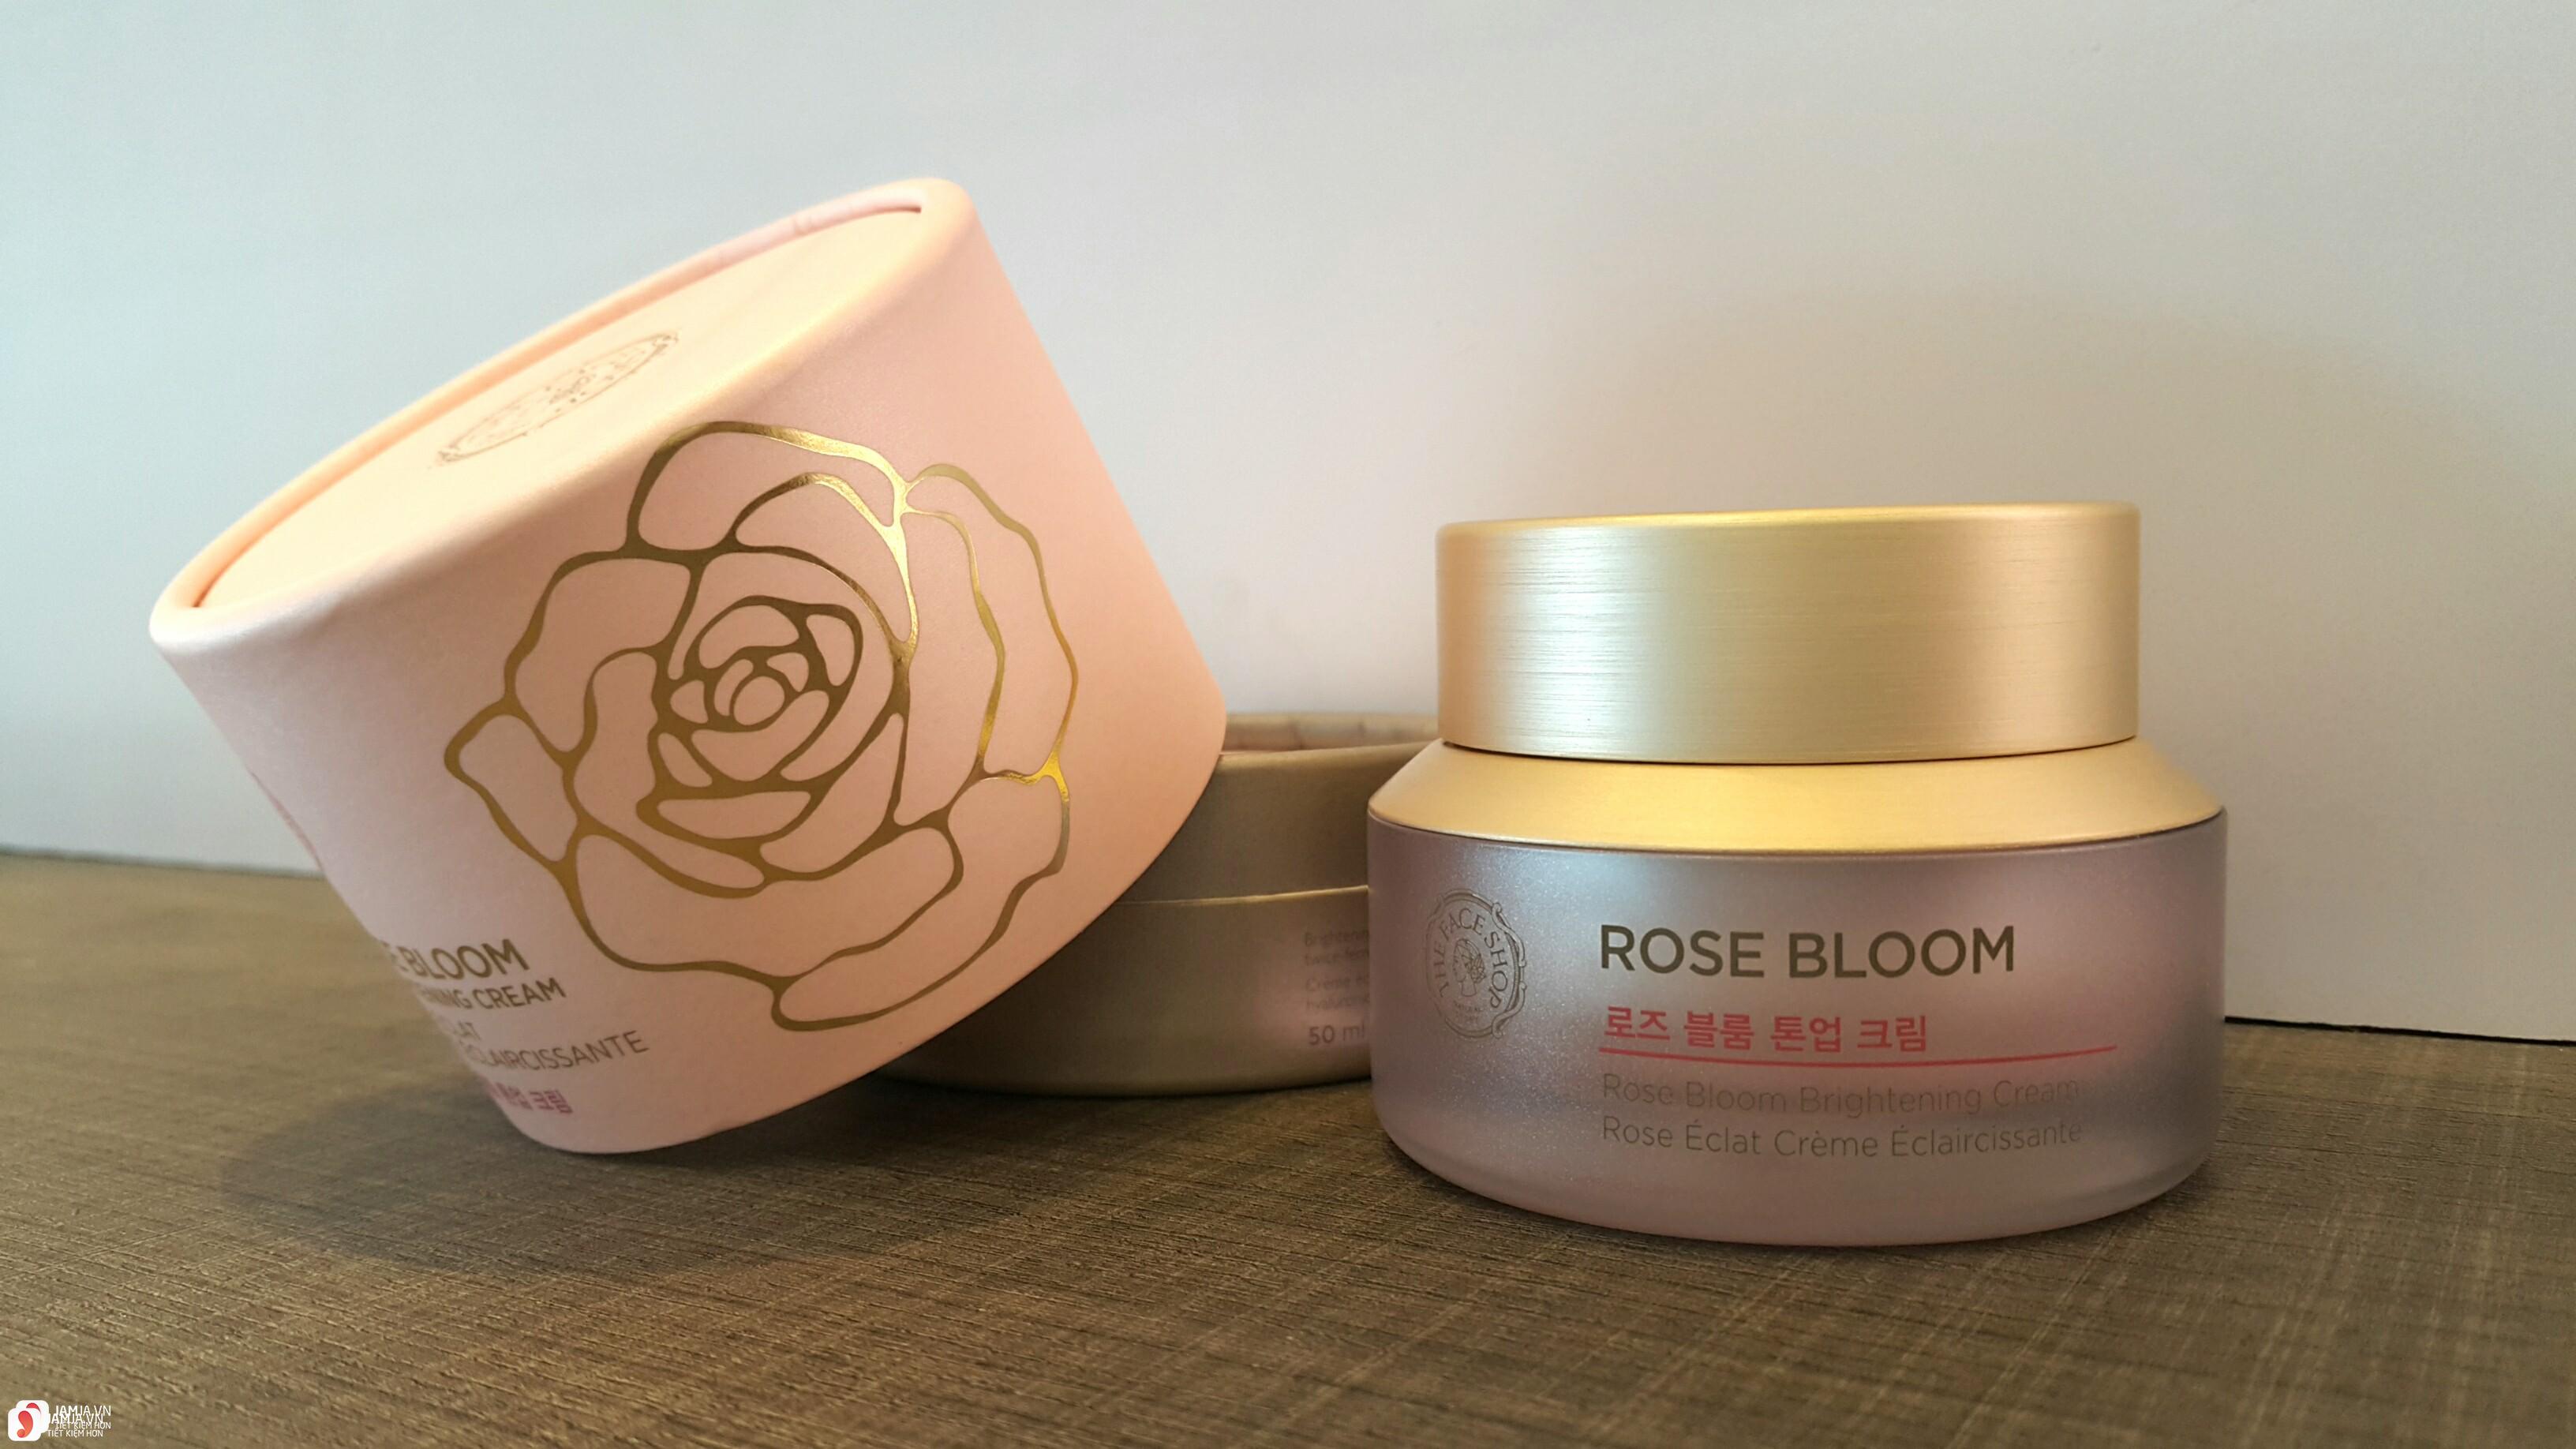  Kem dưỡng trắng Rose Bloom Brightening Cream